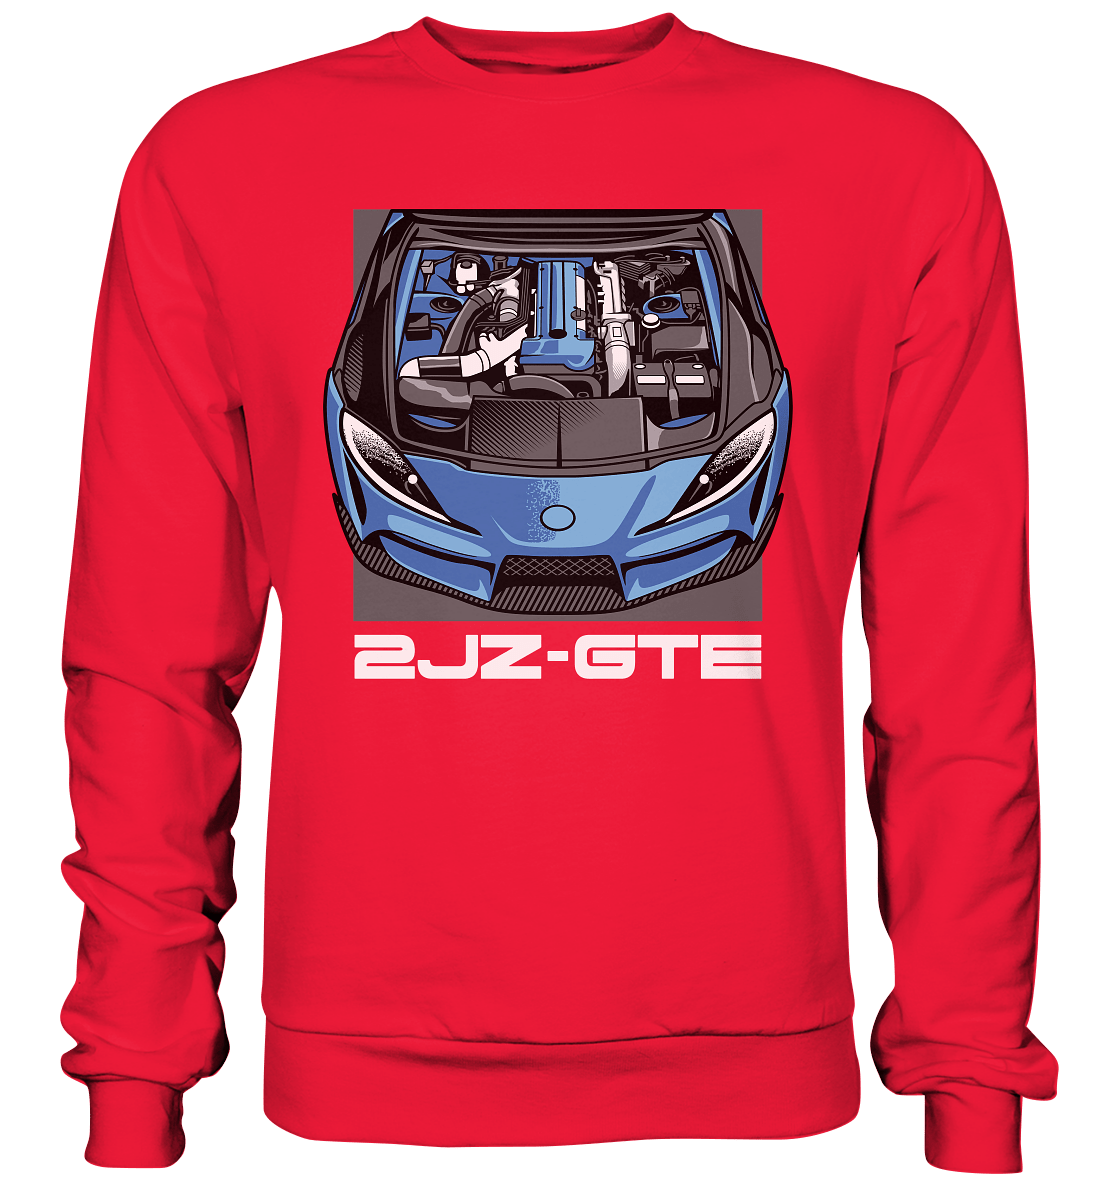 2JZ MK5 - Premium Sweatshirt - MotoMerch.de